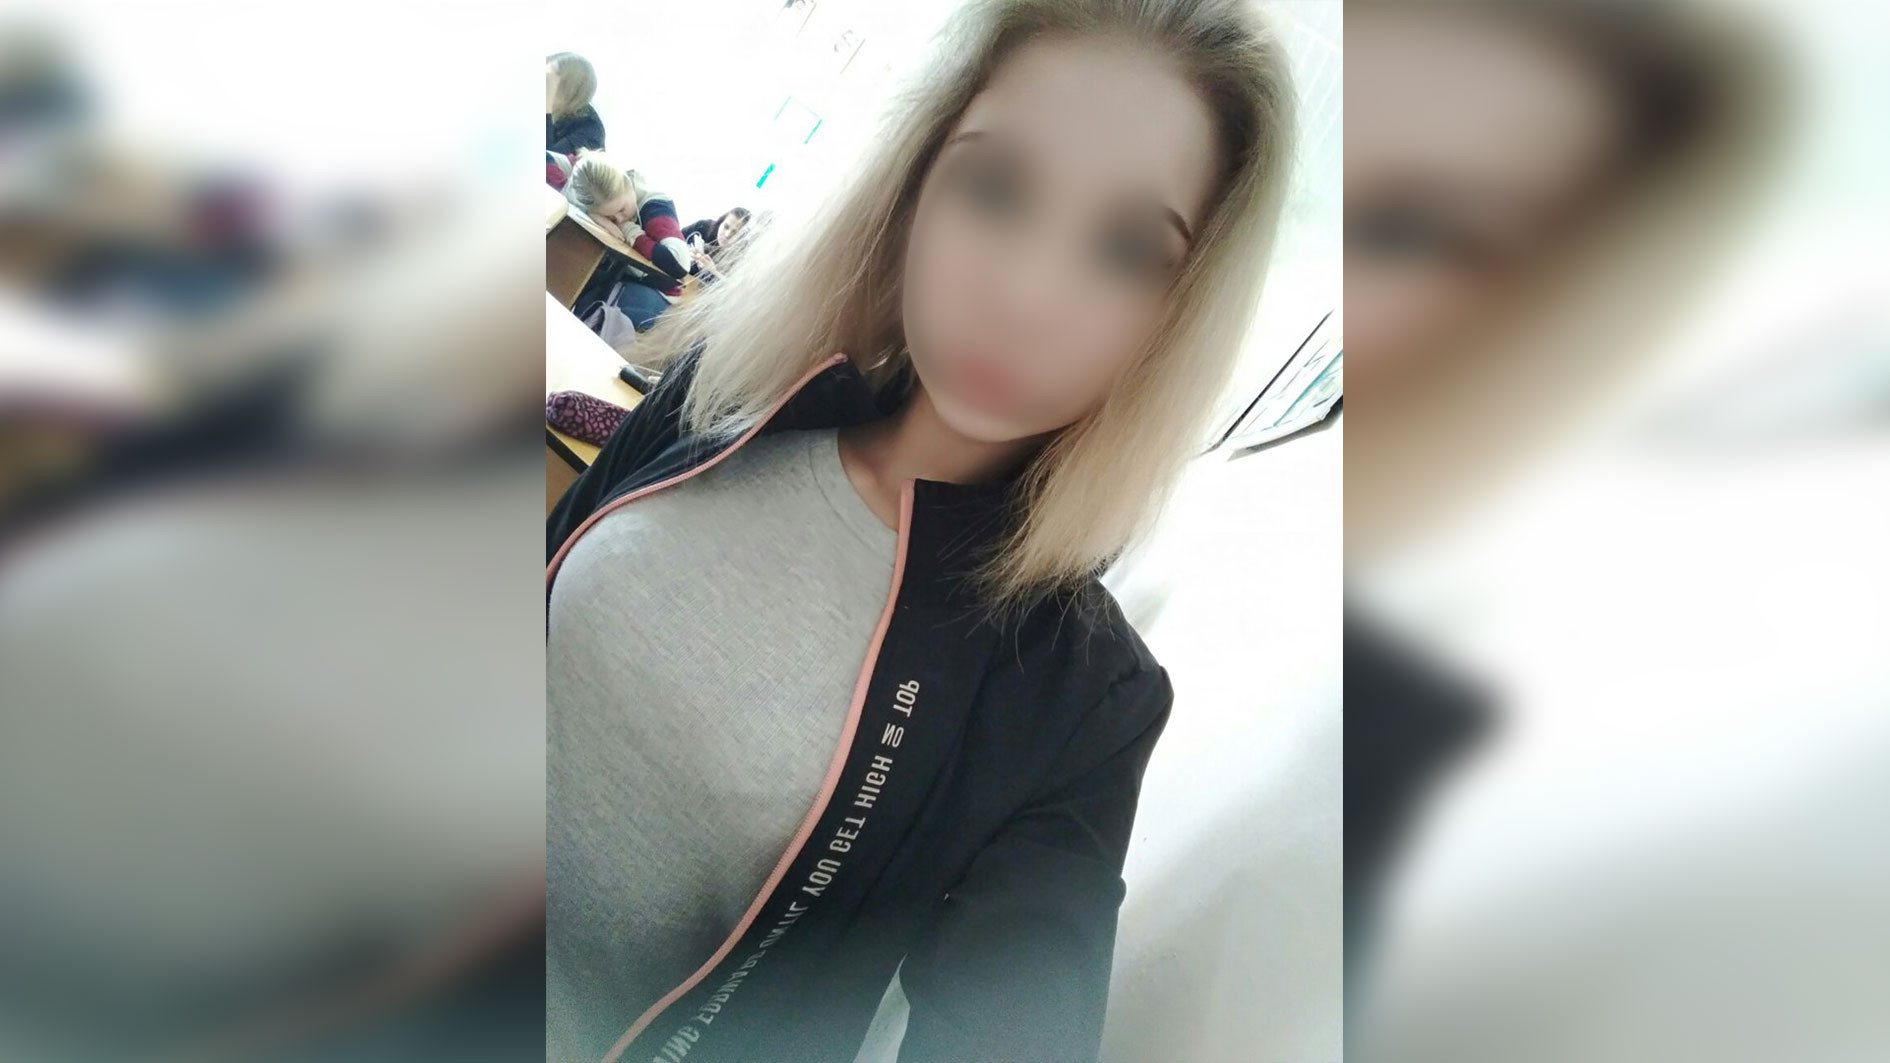 17-летняя пожаловалась в соцсетях на мужчину, заплатившего за секс газетой